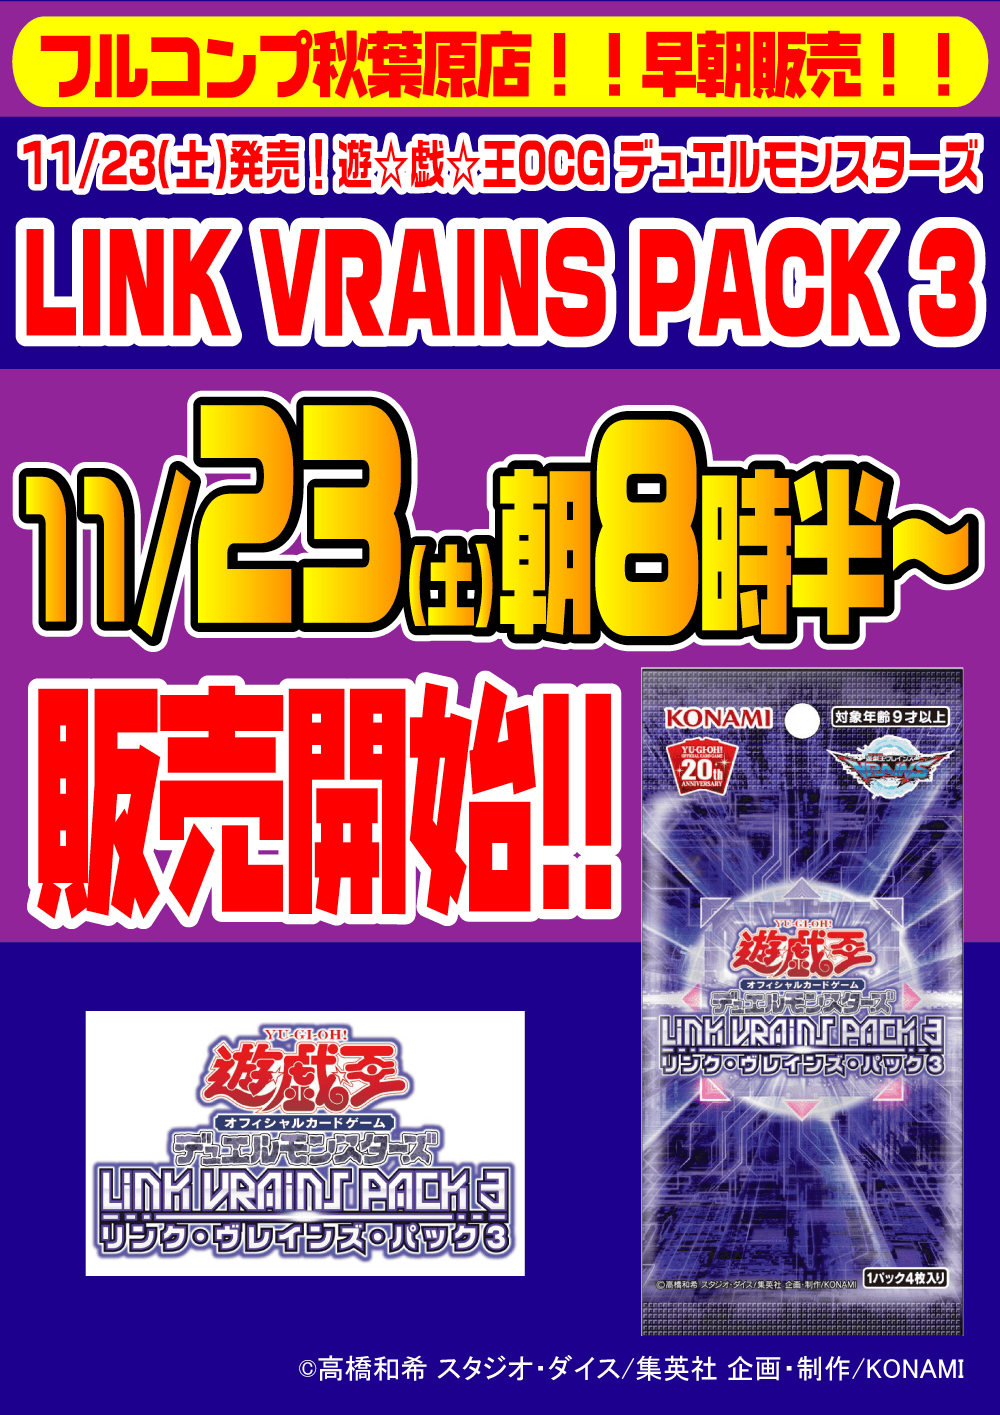 遊戯王OCG デュエルモンスターズ「LINK VRAINS PACK 3」早朝販売